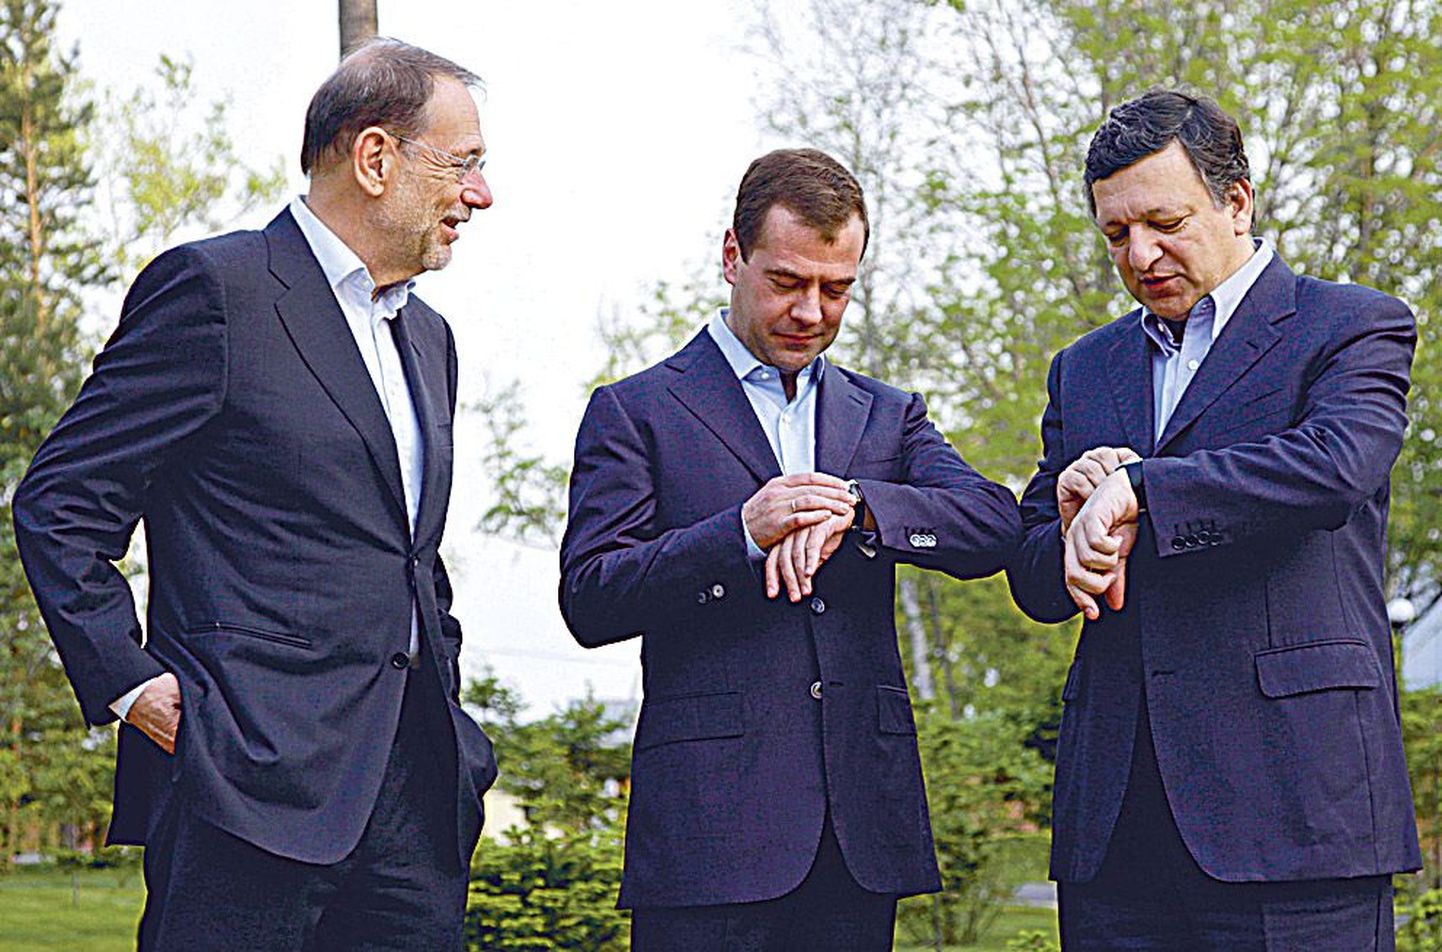 Venemaa president Dmitri Medvedev (keskel), Euroopa Komisjoni president José Manuel Barroso (paremal) ja ELi välispoliitikajuht Javier Solana (vasakul) eile kaugel Habarovskis kelli kontrollimas.